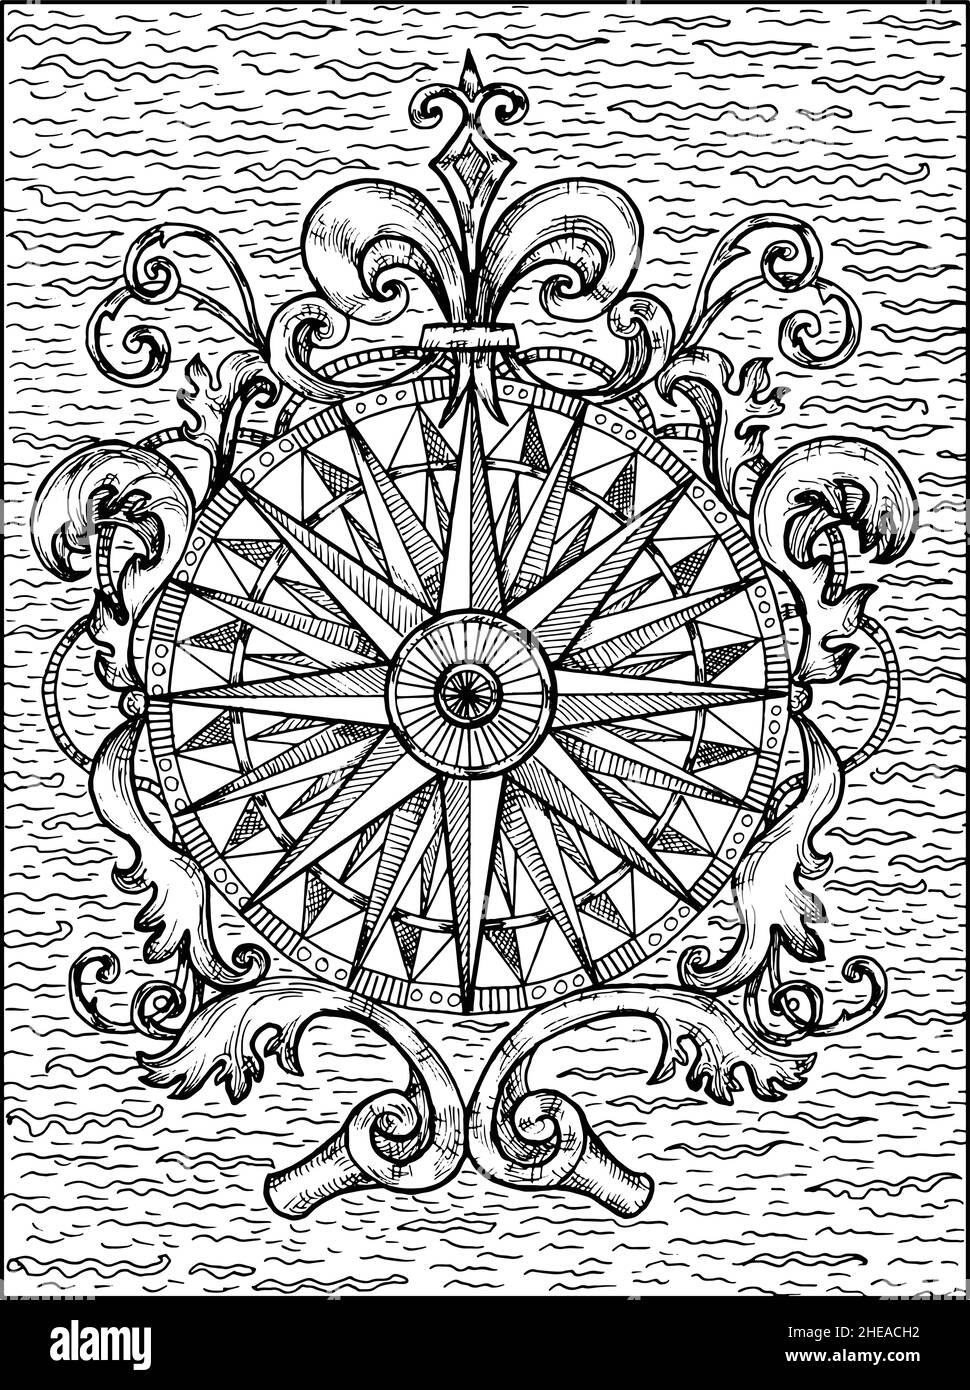 Schwarz-weiße Darstellung von Kompass oder Windrose mit viktorianischen und barocken Mustern verziert. Nautische Vektor Vintage-Zeichnungen, marine Konzept, Stock Vektor